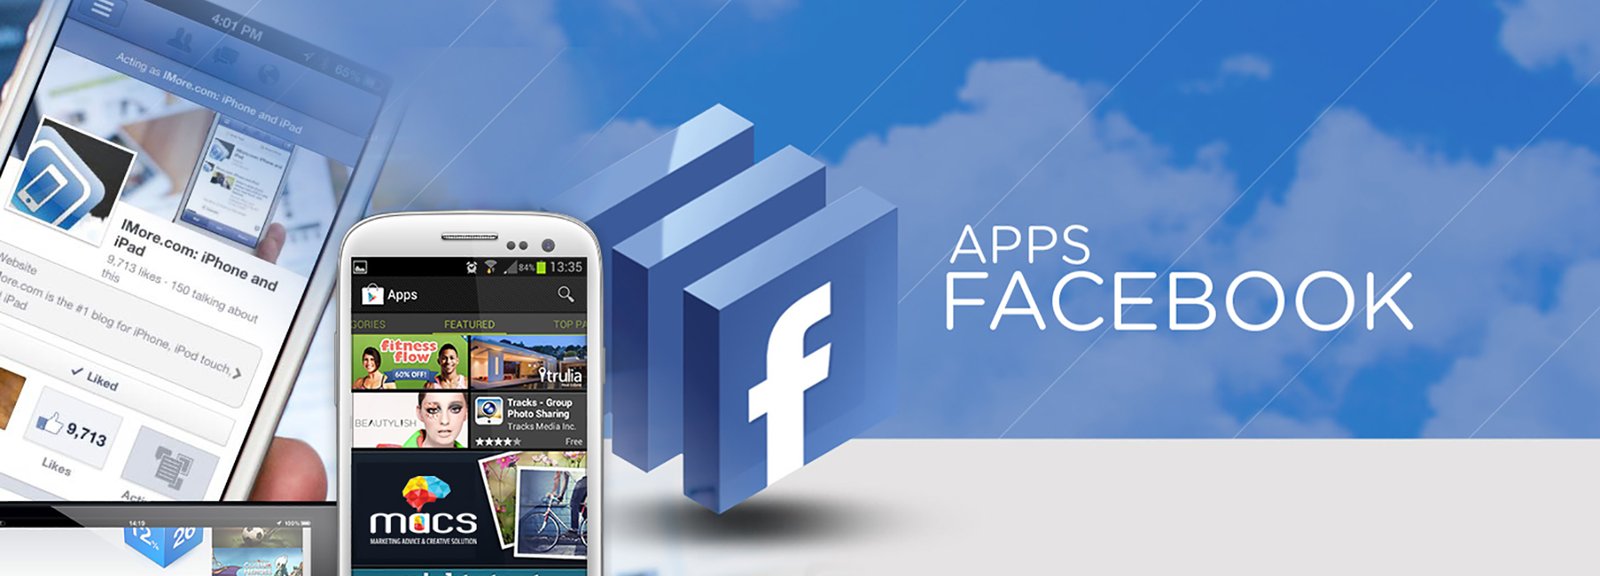 MACS Facebook apps